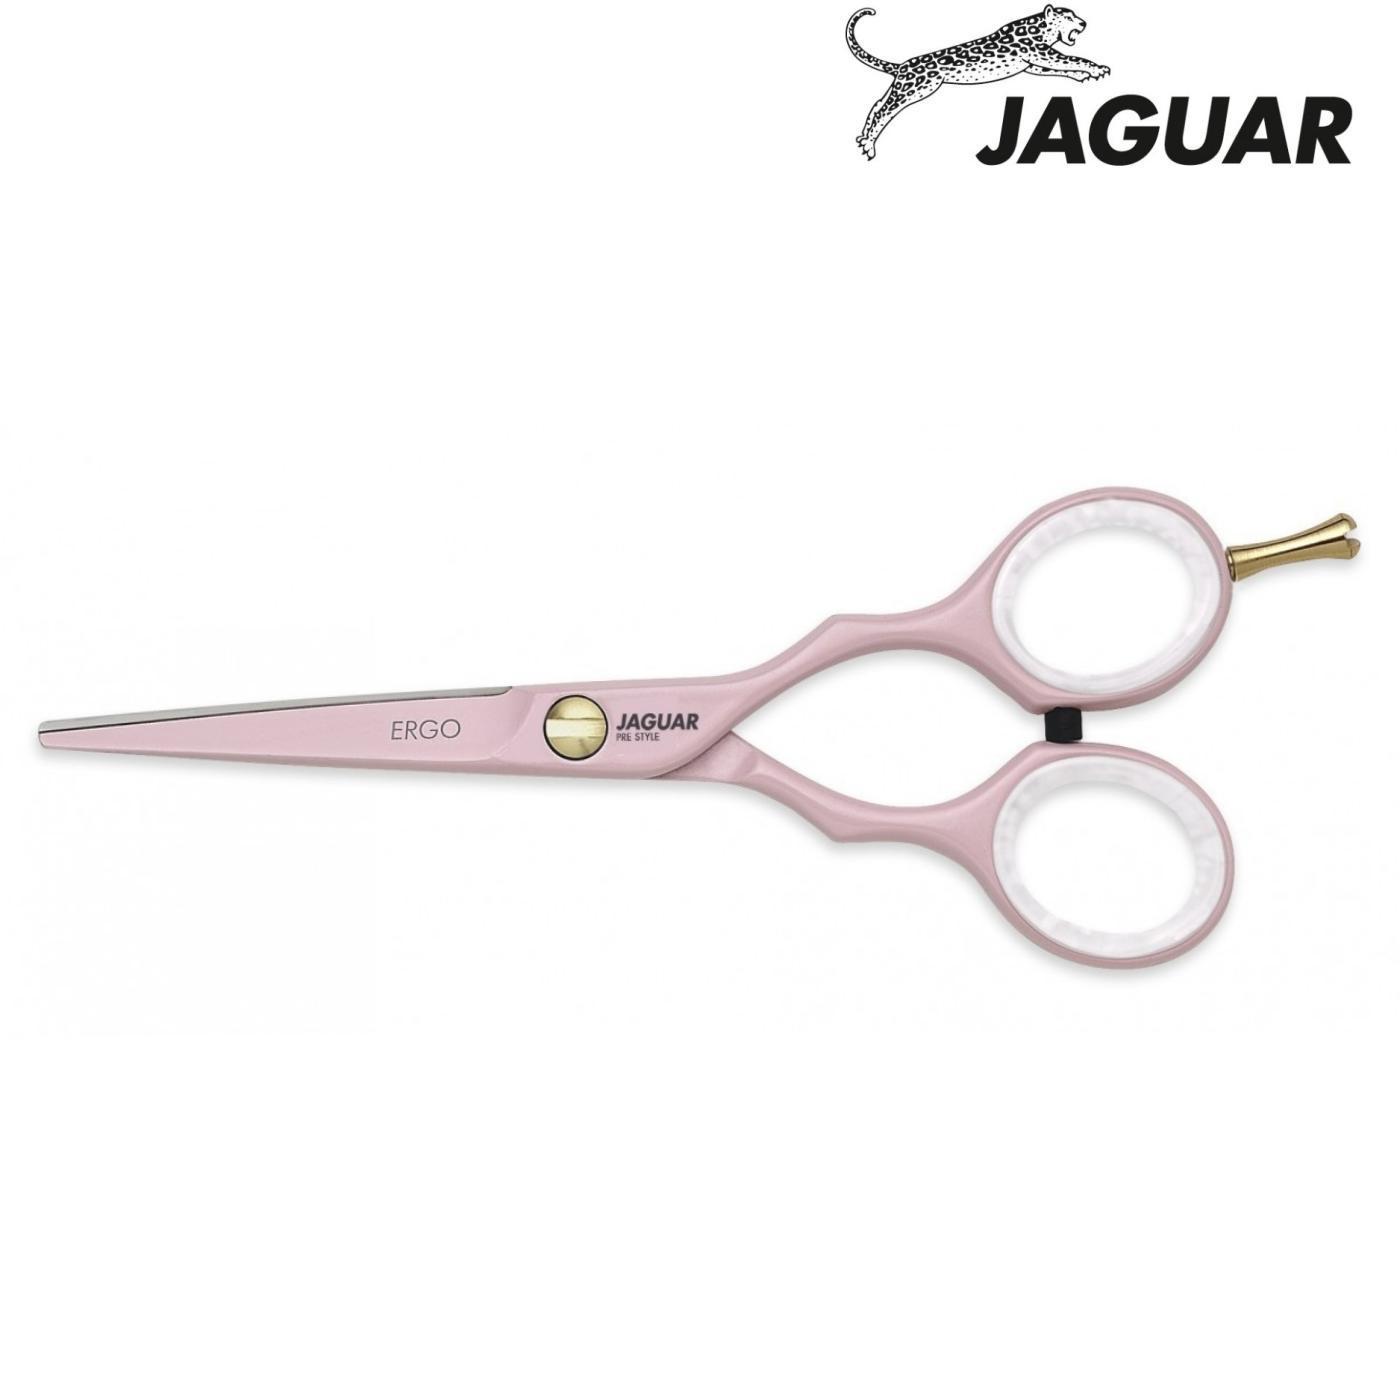 Jaguar Hairdressing Shears - Japan Scissors USA